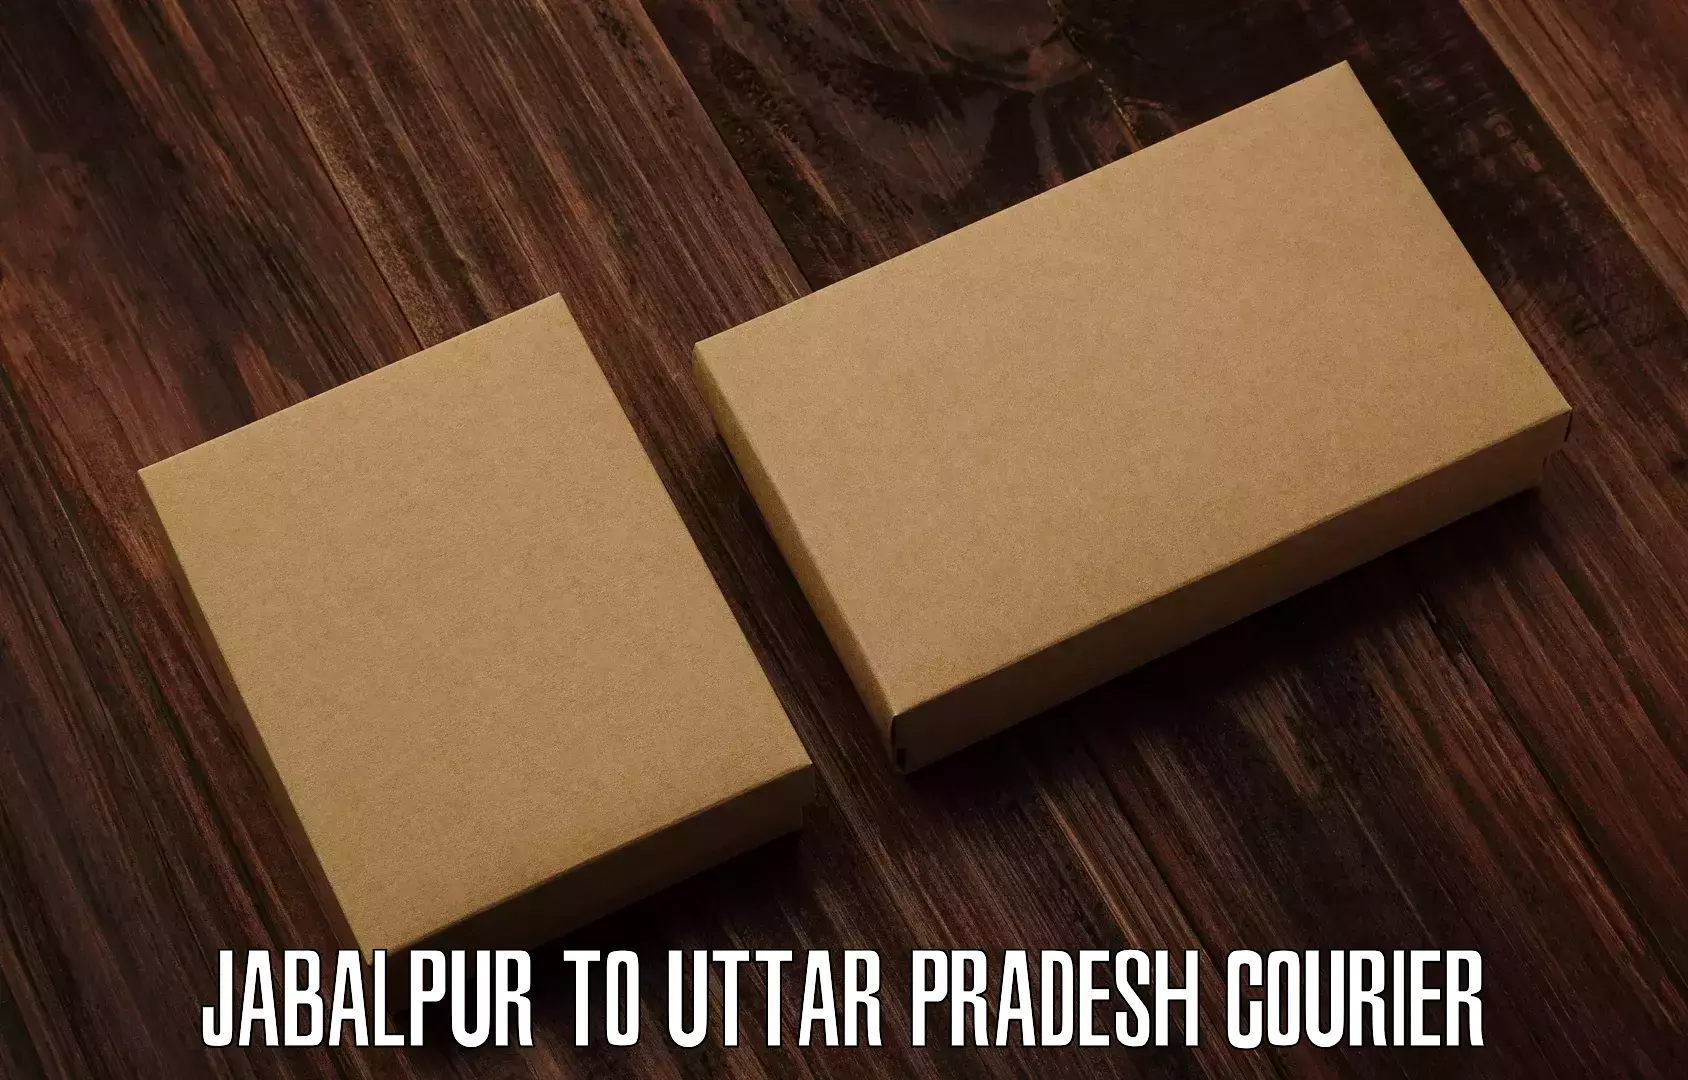 International courier networks Jabalpur to Uttar Pradesh